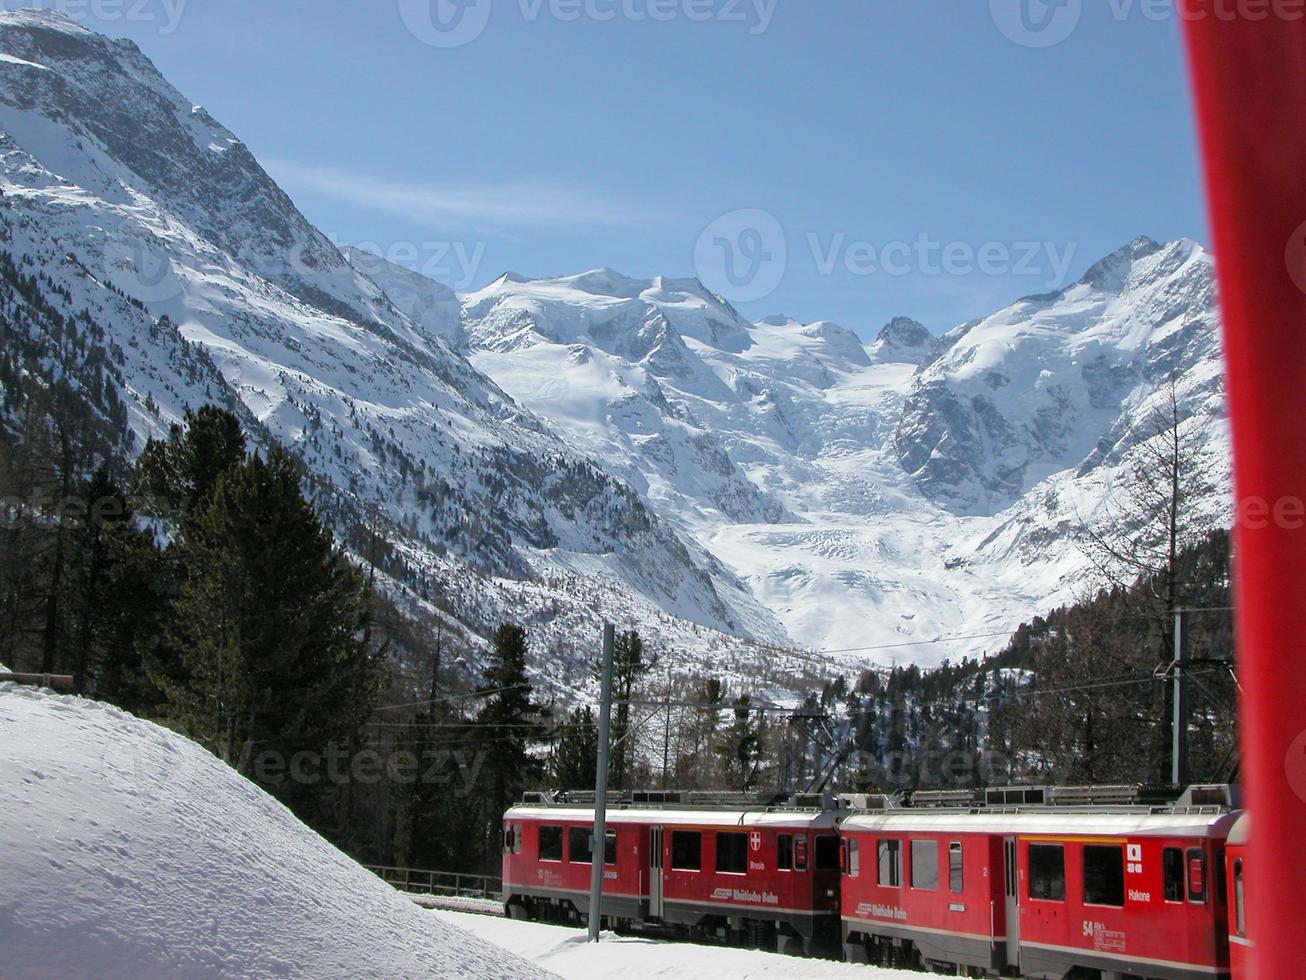 piz bernina catena montuosa nelle alpi retiche svizzere nel canton gr foto